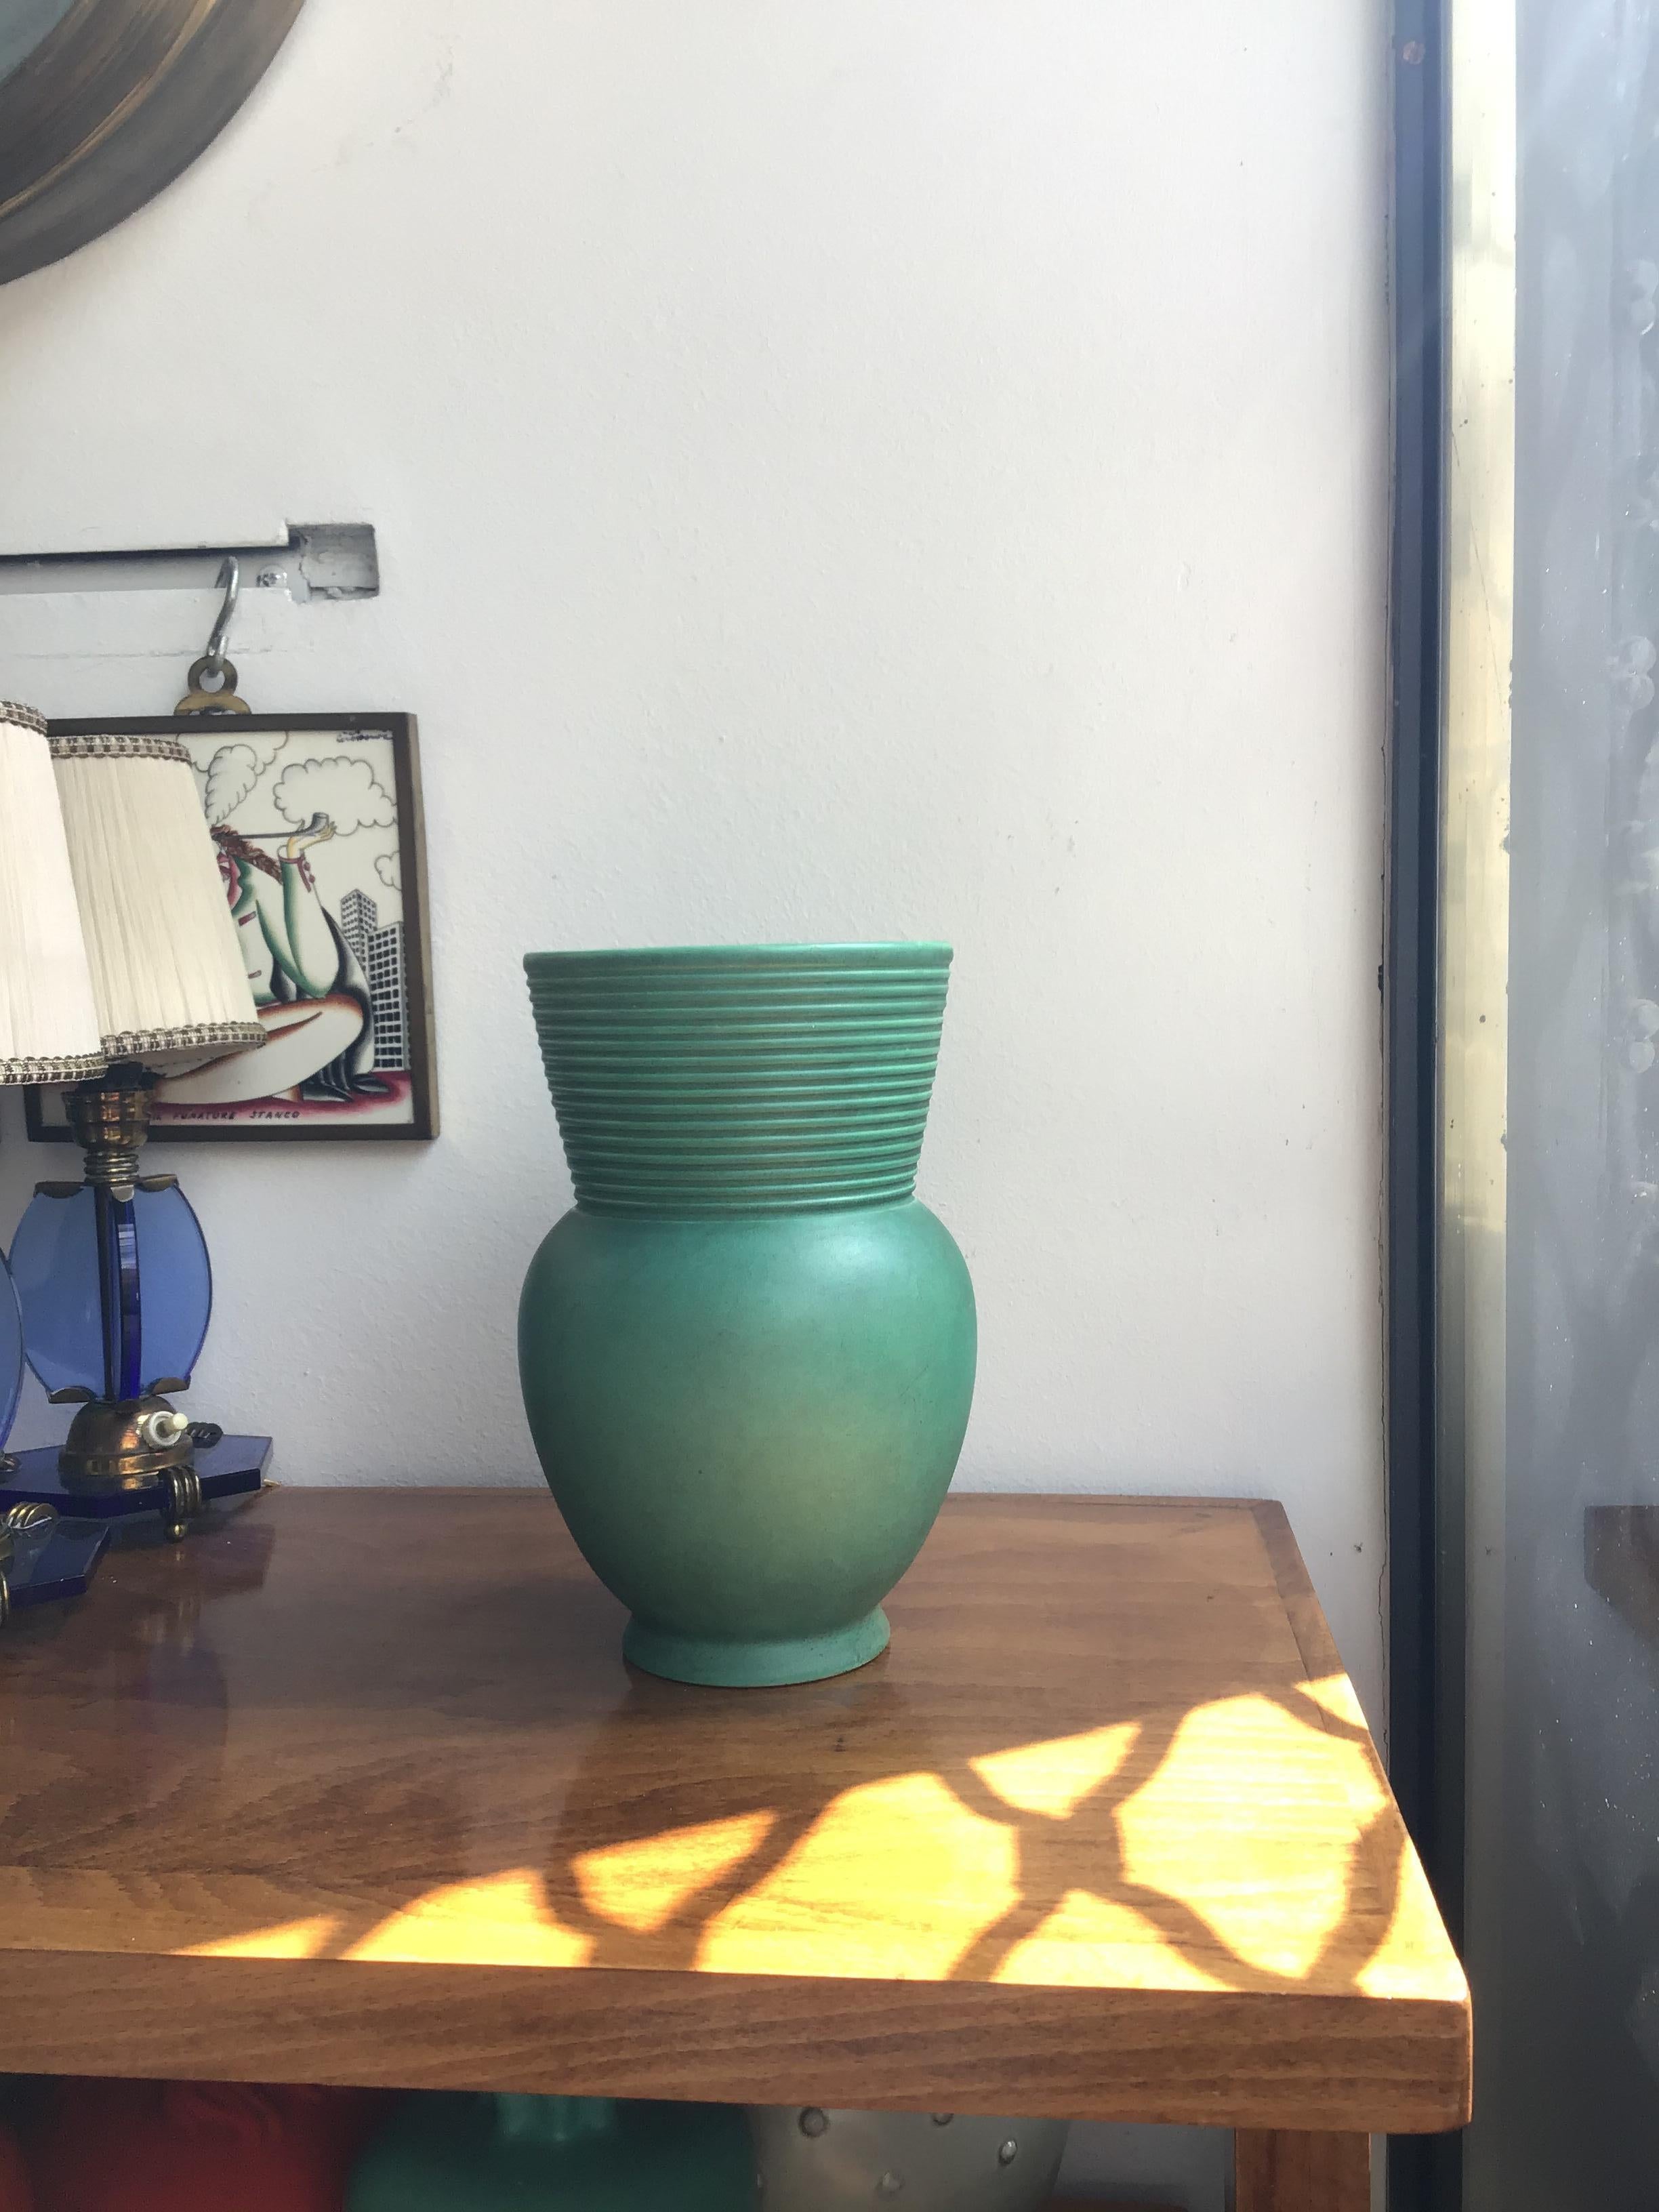 Richard Ginori Giovanni Gariboldi vase green ceramic 1950 Italy.